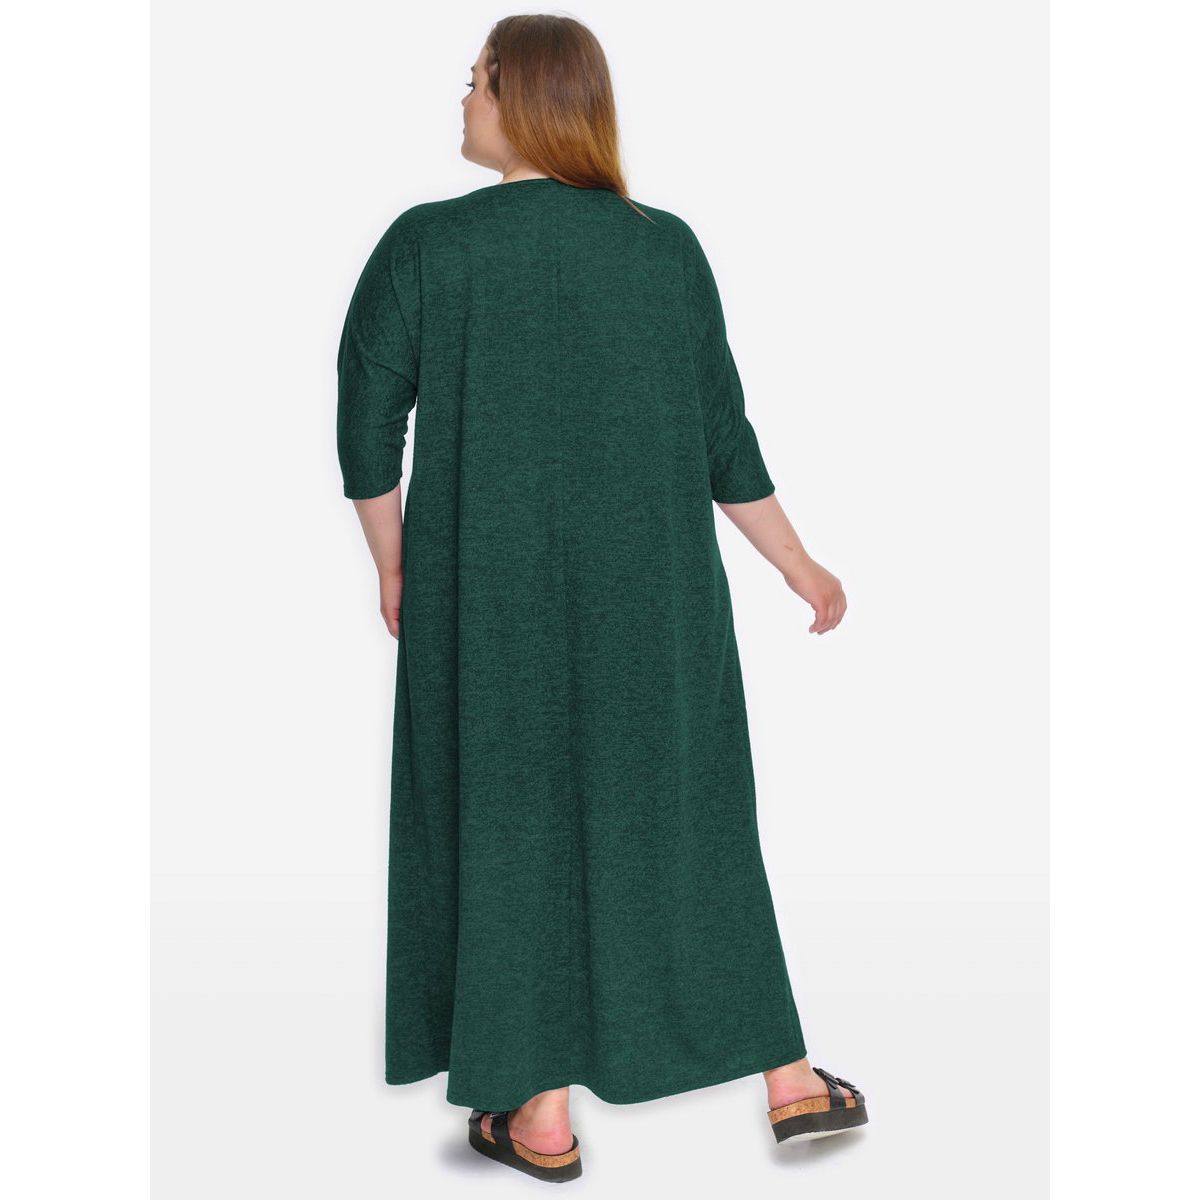 Платье из джерси, зеленый меланж, комбинированное с серым